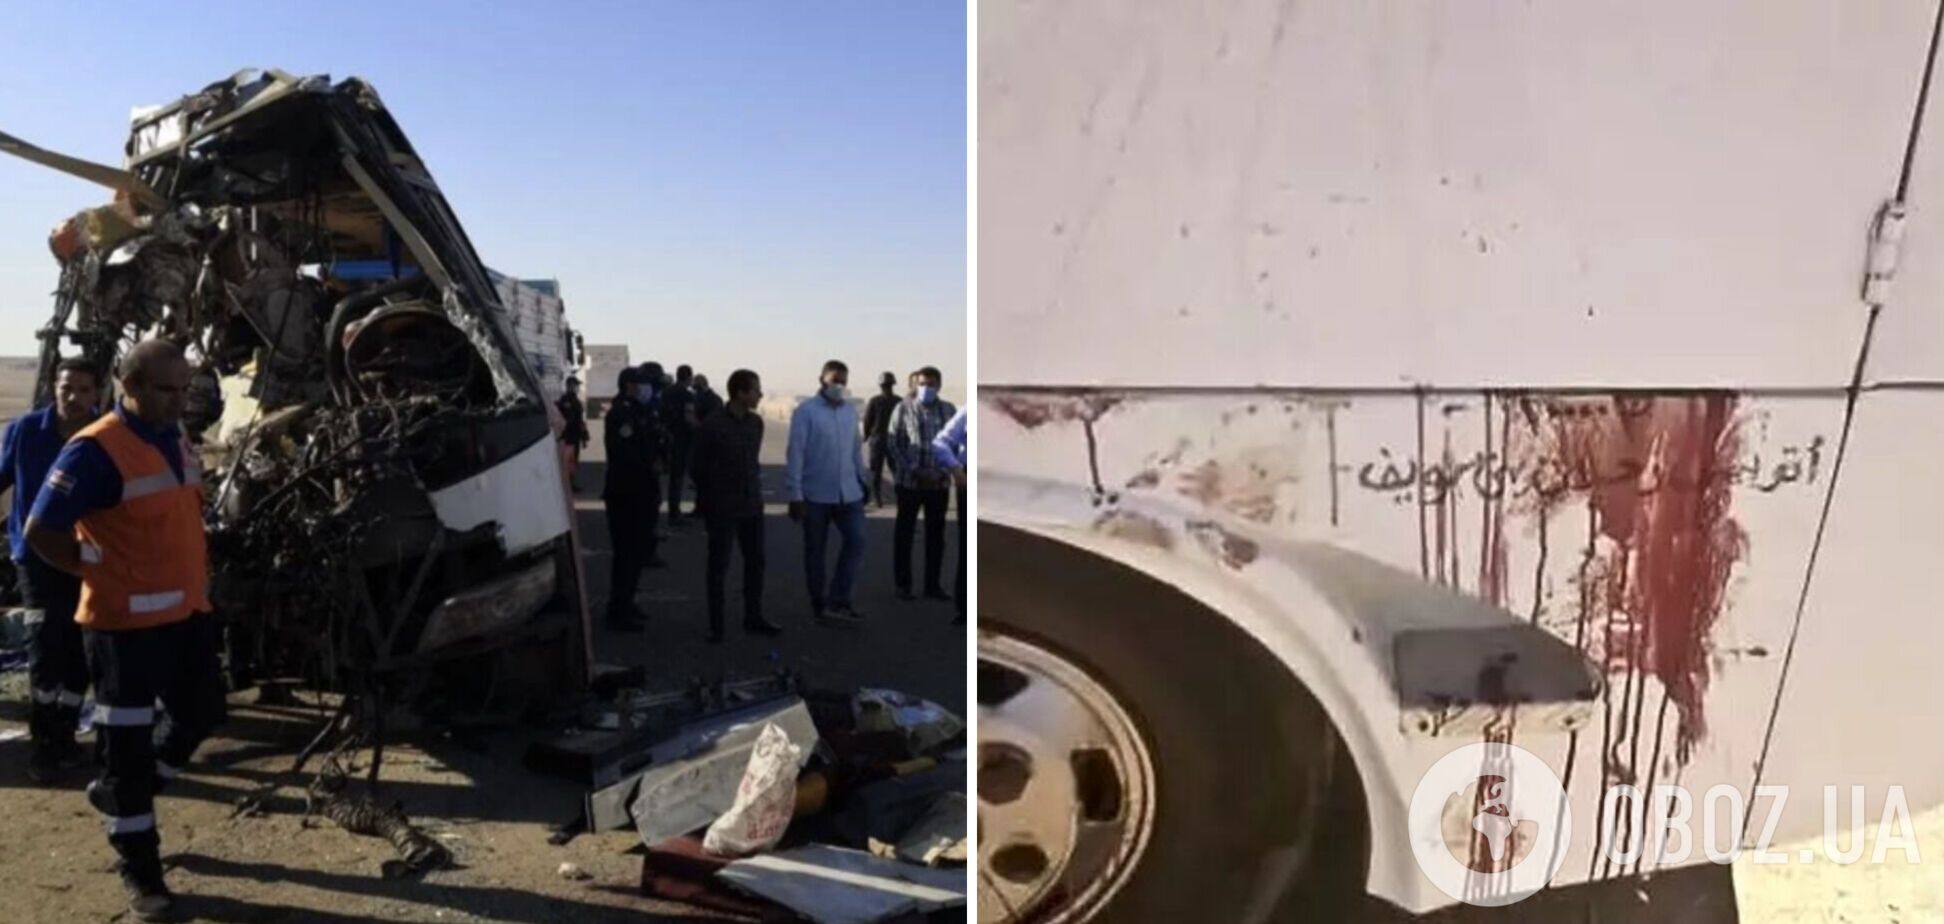 У Єгипті пасажирський автобус влетів у вантажівку: 23 людей загинуло, 30 поранено. Фото